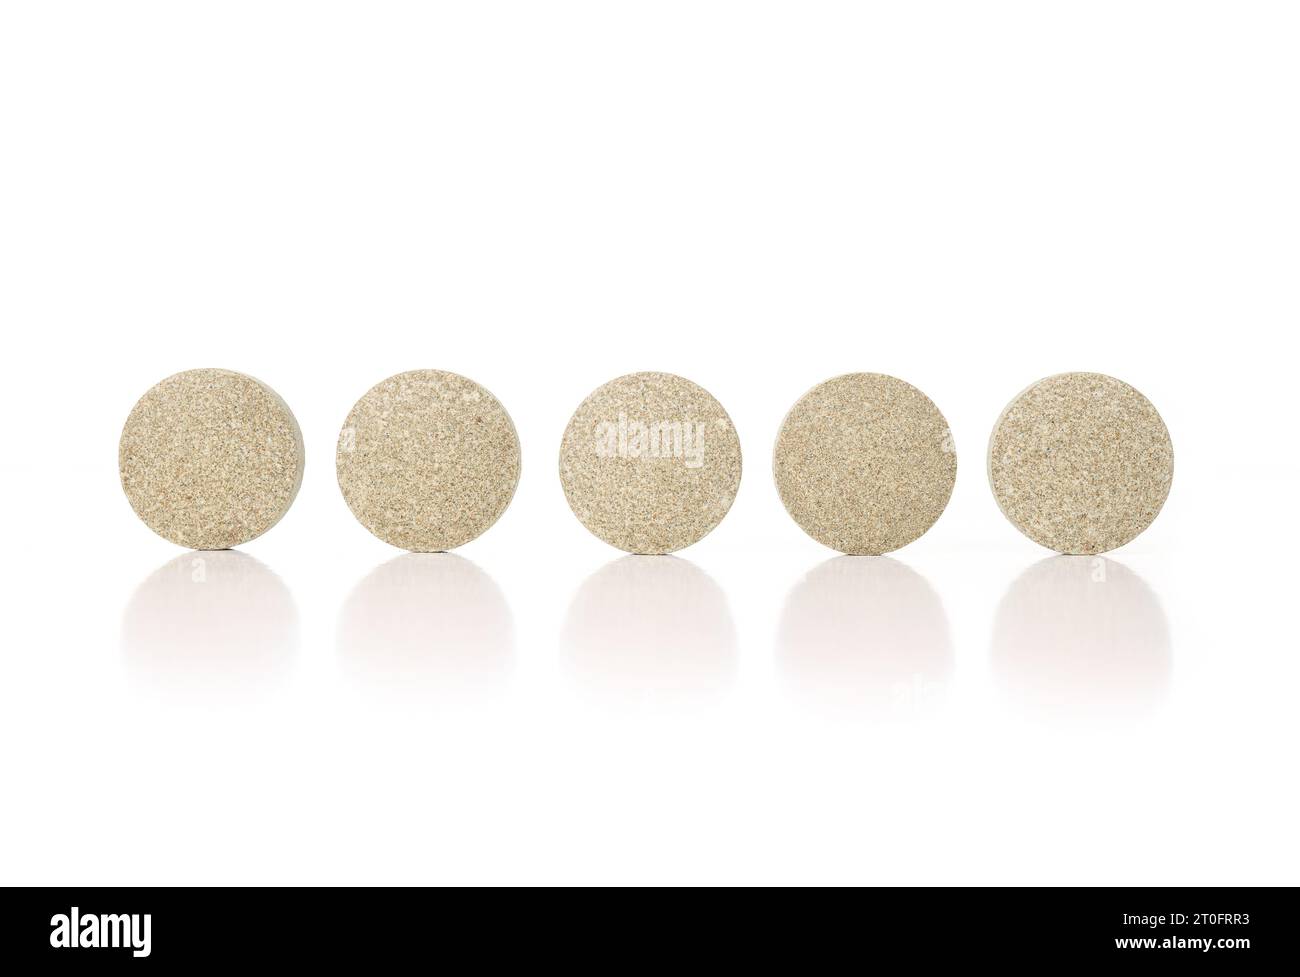 Runde Tabletten in einer Reihe. Mehrere grün strukturierte gepresste Wafer-Tabletten oder -Pillen. Isolierte Multivitamine für Hunde, Nahrungsergänzungsmittel. Selektiver Fokus. Whi Stockfoto